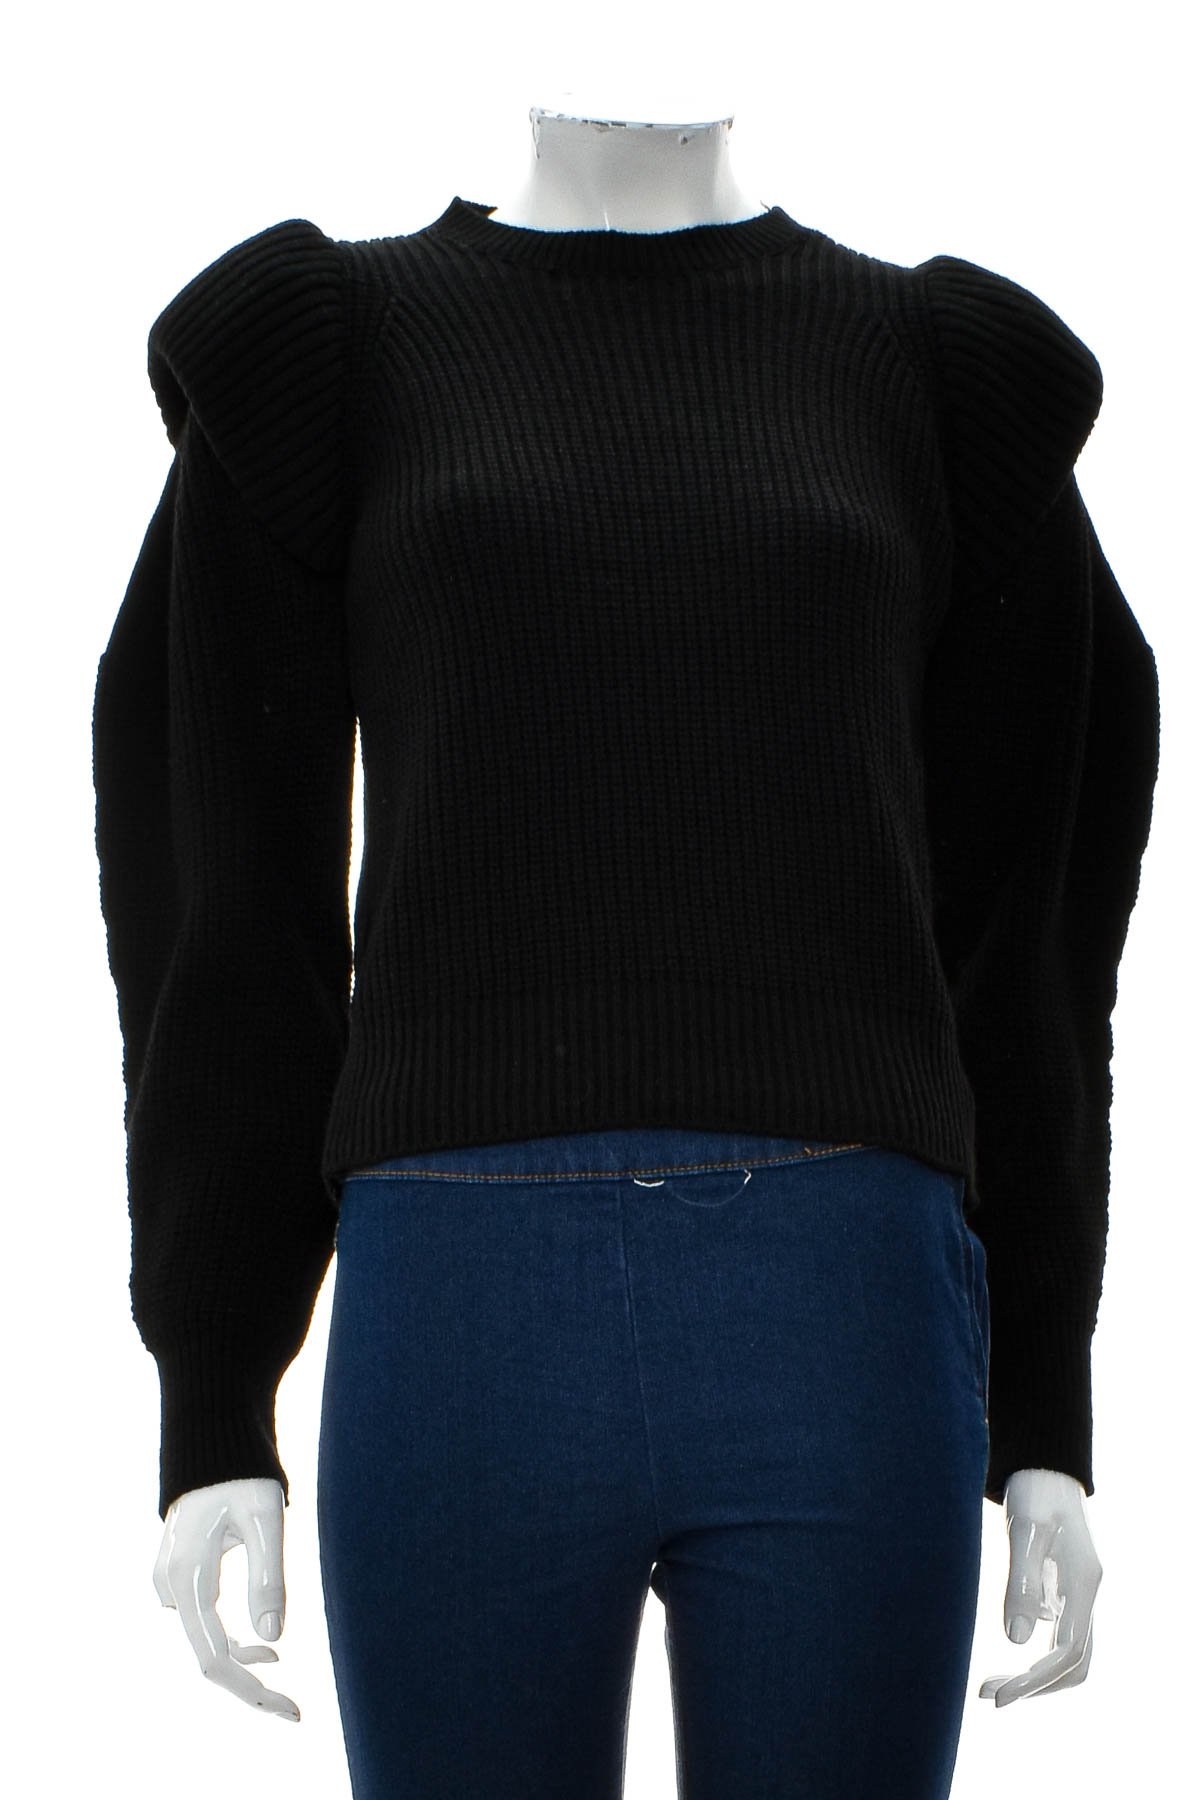 Women's sweater - LEFON - 0